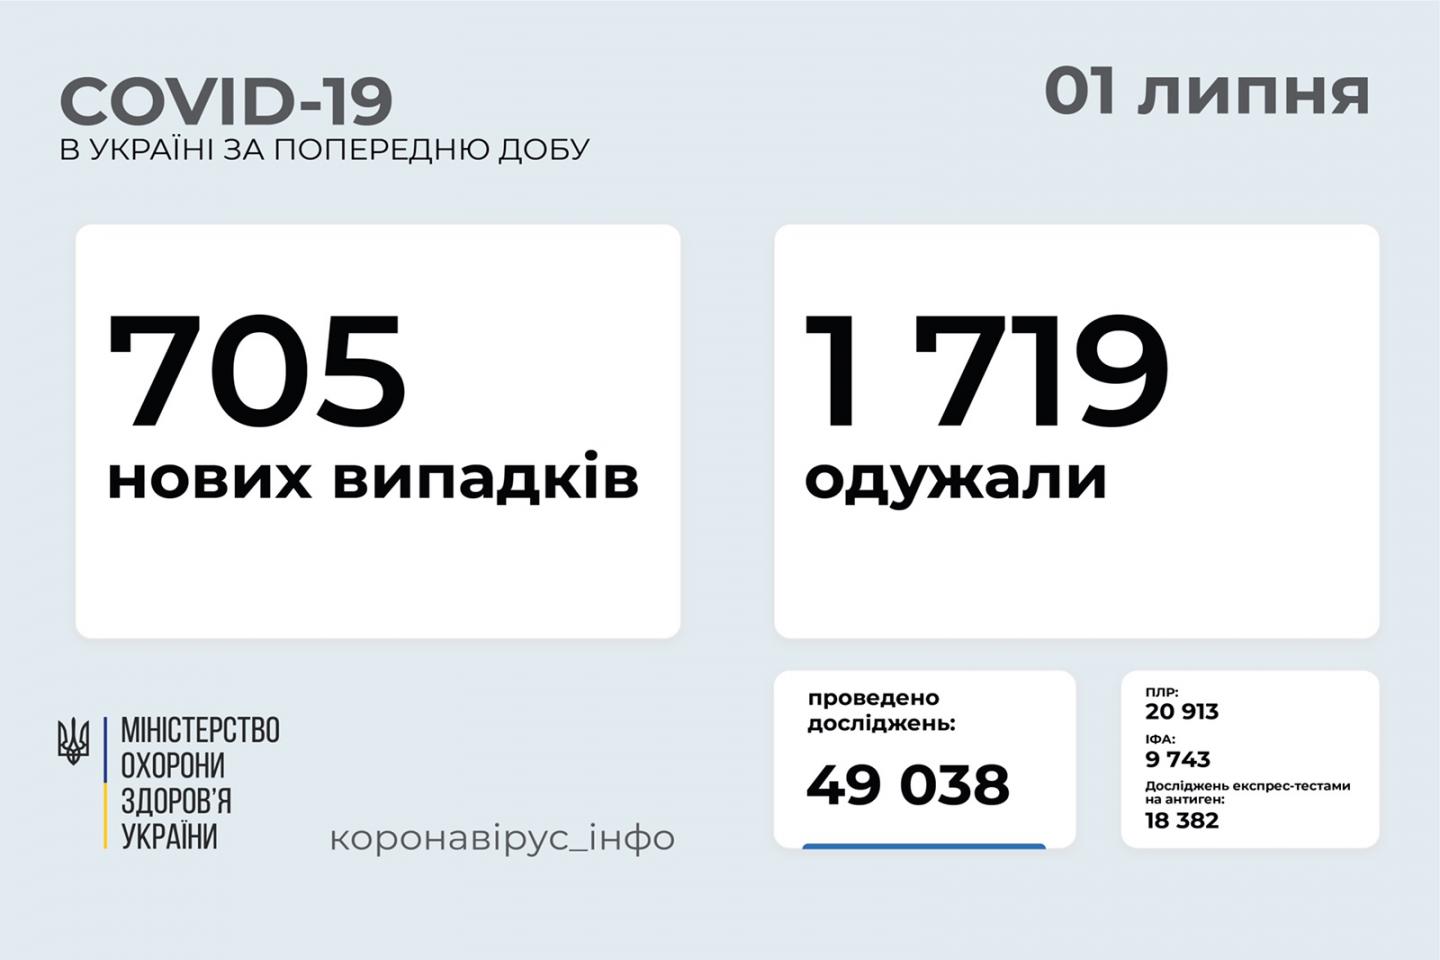 http://dunrada.gov.ua/uploadfile/archive_news/2021/07/01/2021-07-01_5220/images/images-27543.jpg